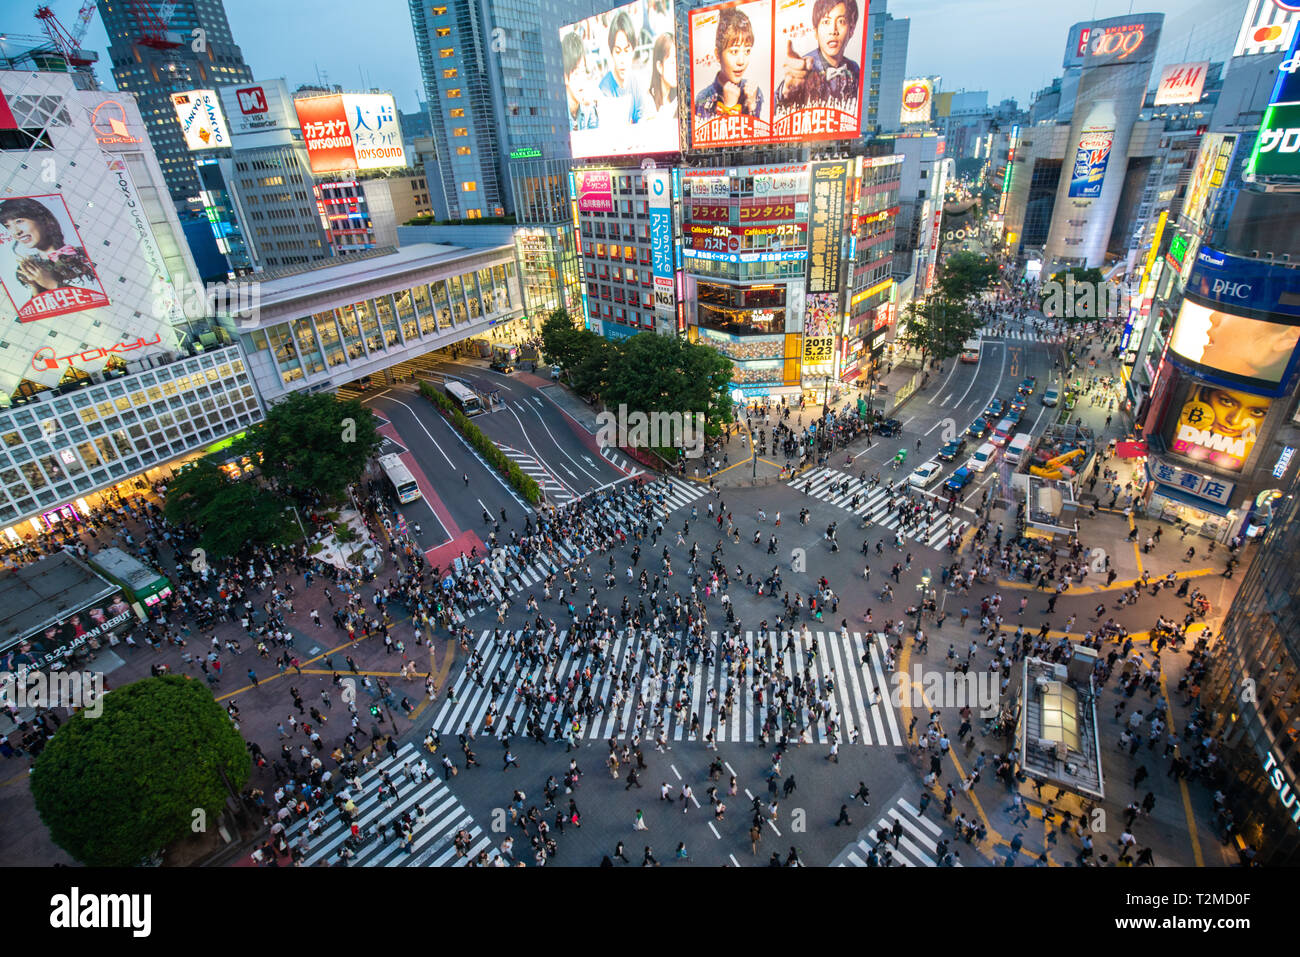 TOKYO, Japan - 16. MAI 2018: Fußgänger an zebrastreifen Stadtteil Shibuya in Tokio, Japan. Shibuya Crossing ist einer der verkehrsreichsten Fussgängerstreifen in der Welt Stockfoto